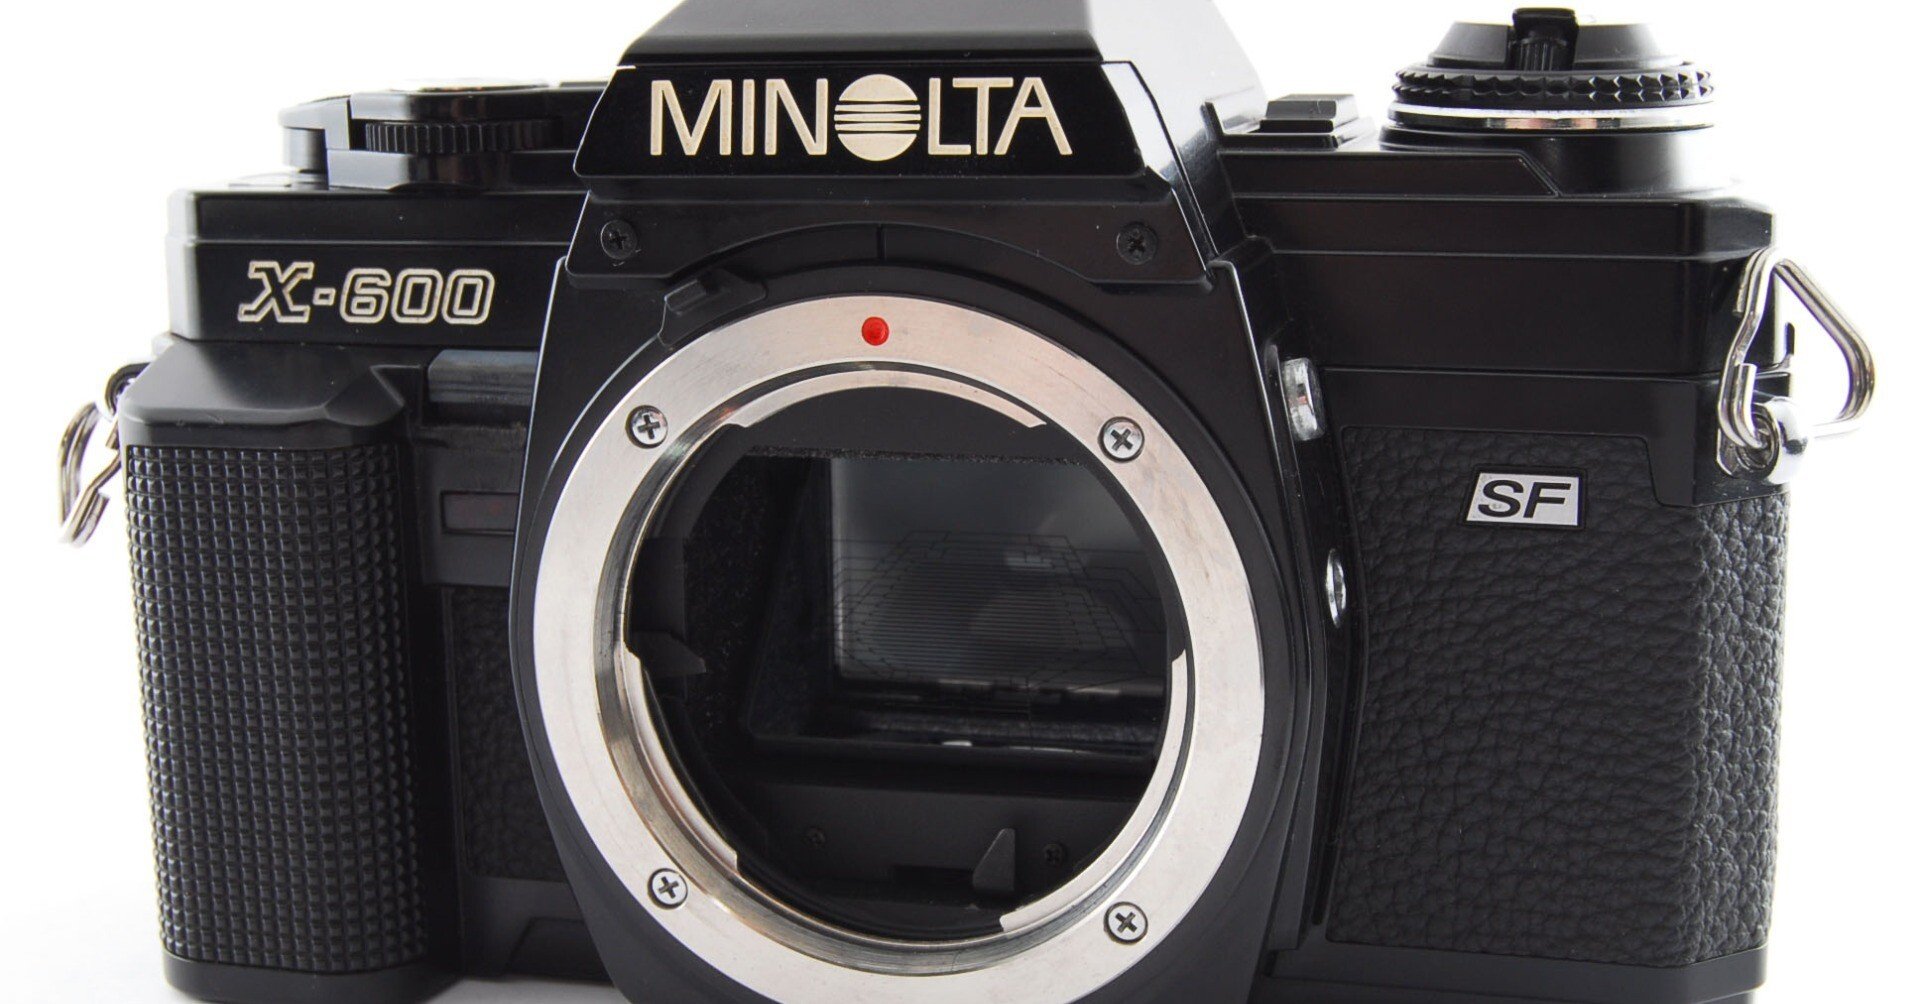 1872 とても使いやすいフィルムカメラ♪ MINOLTA X-600 ボディ